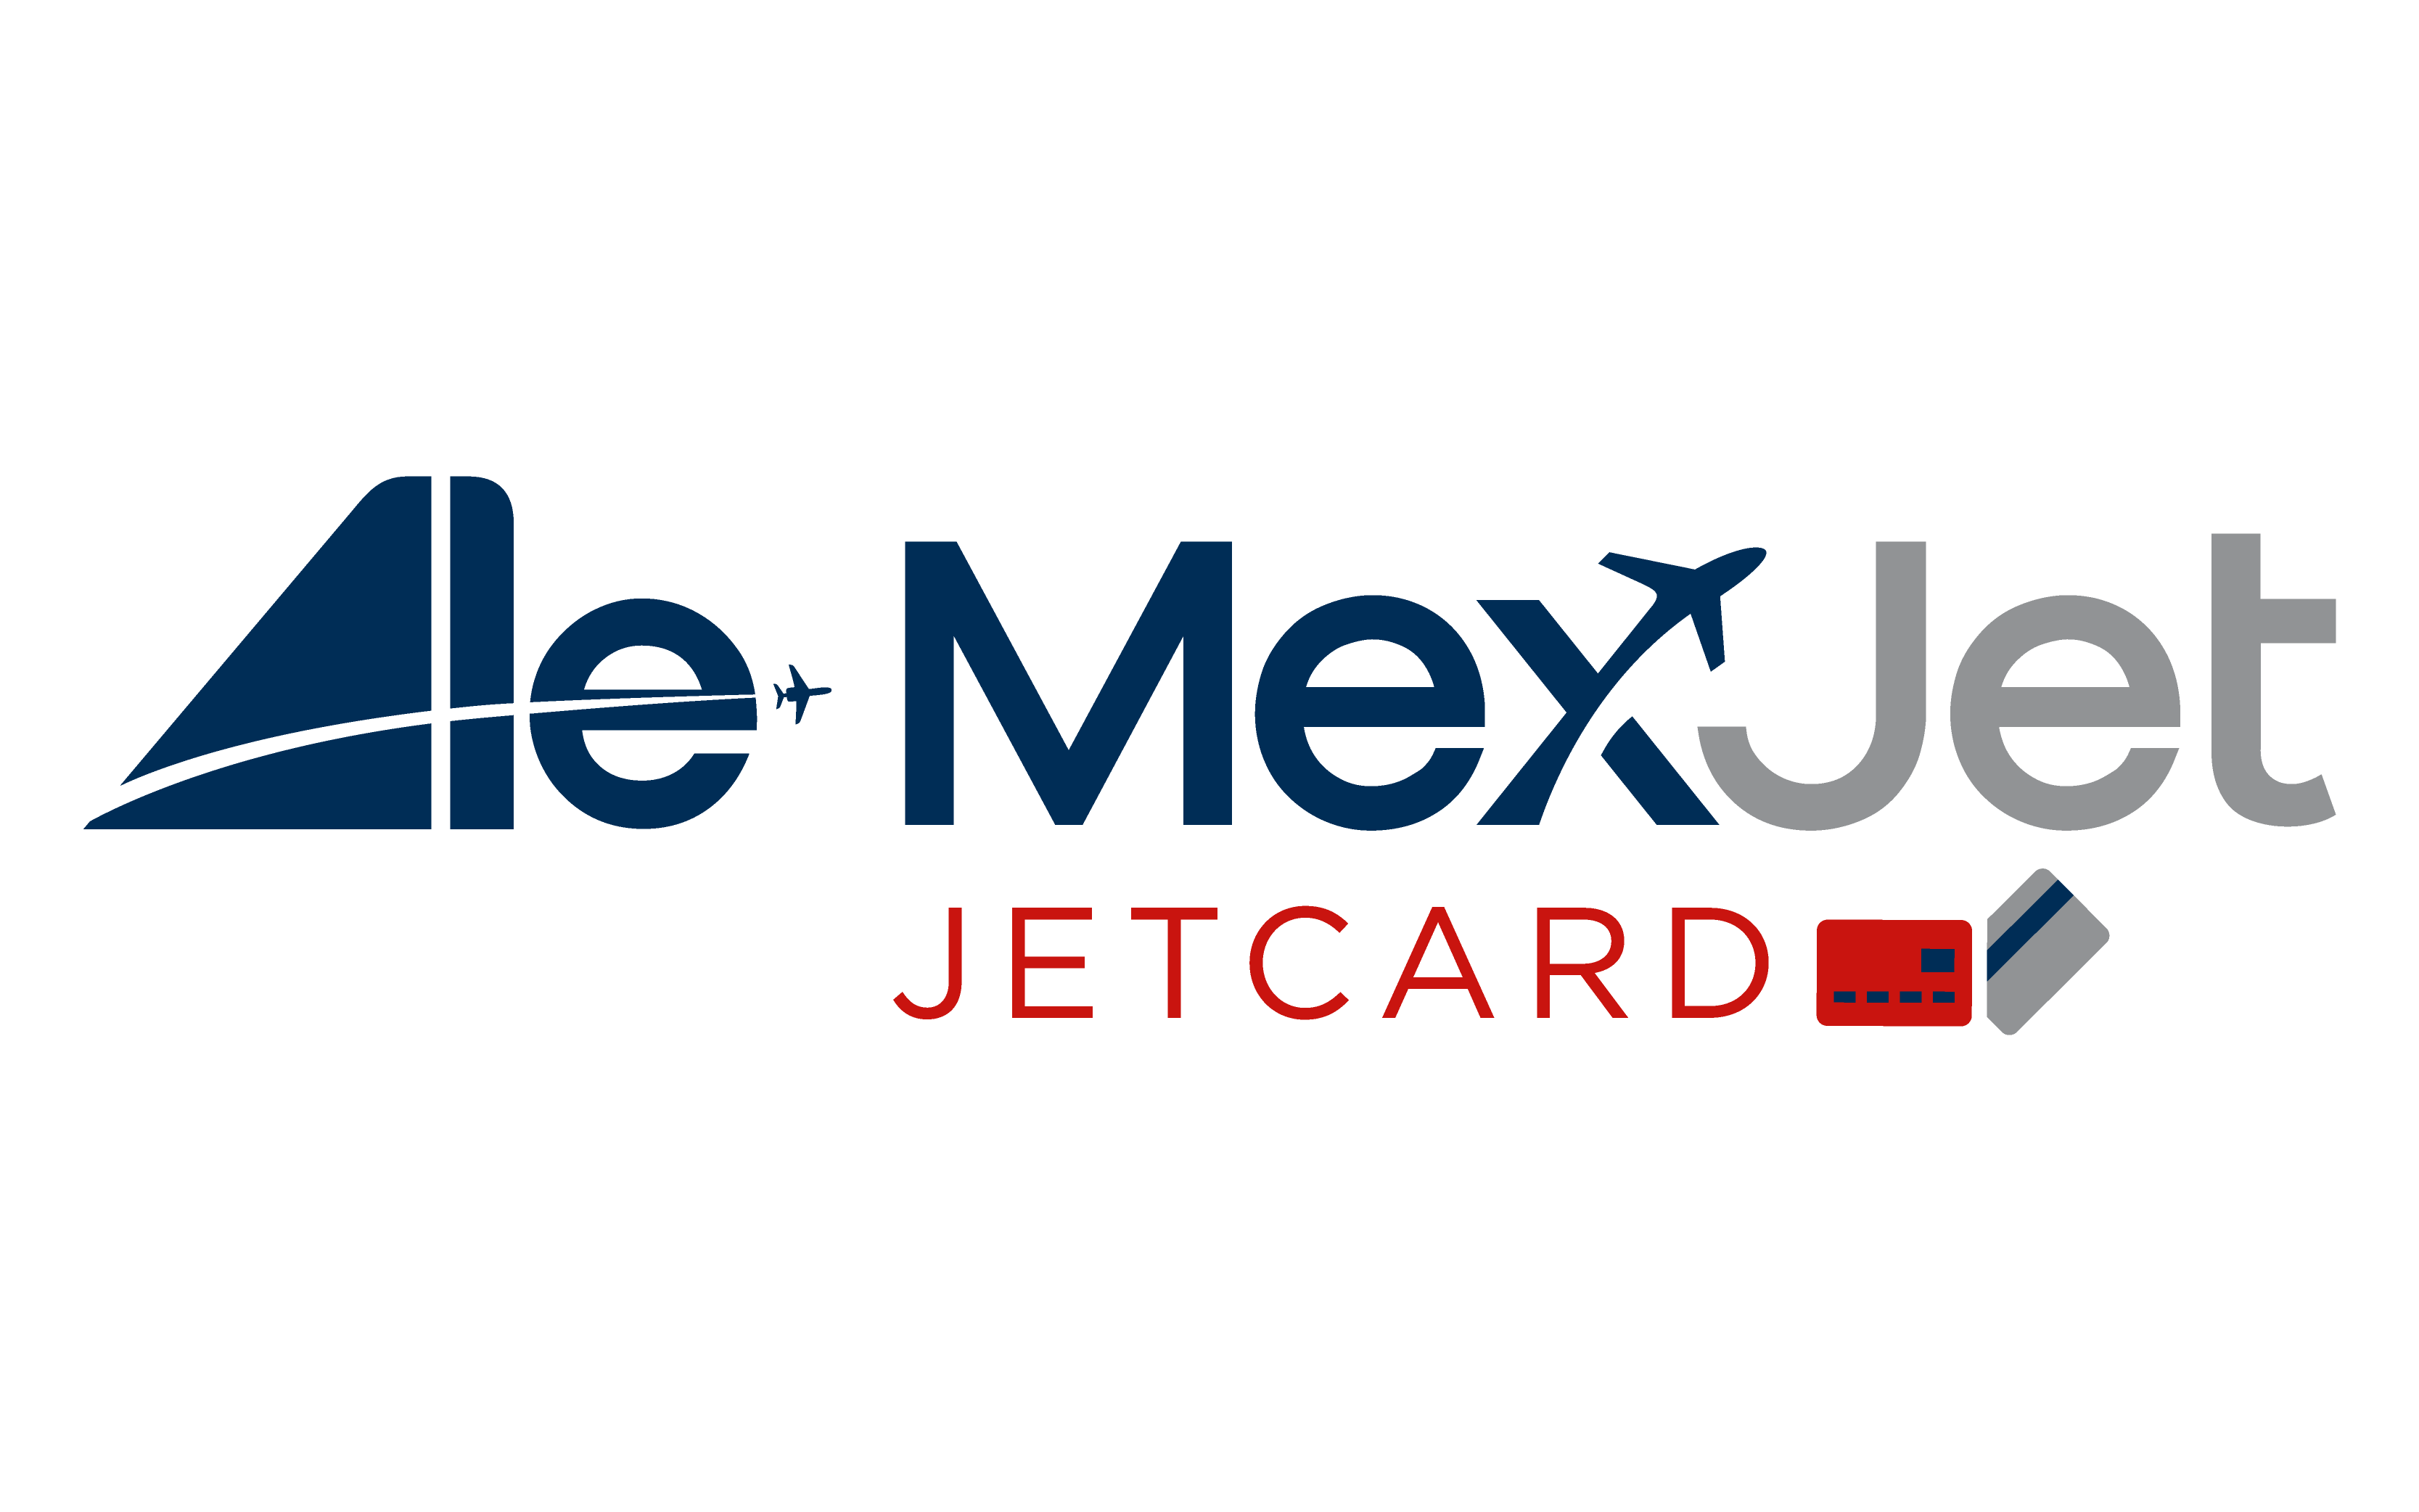 JetCard